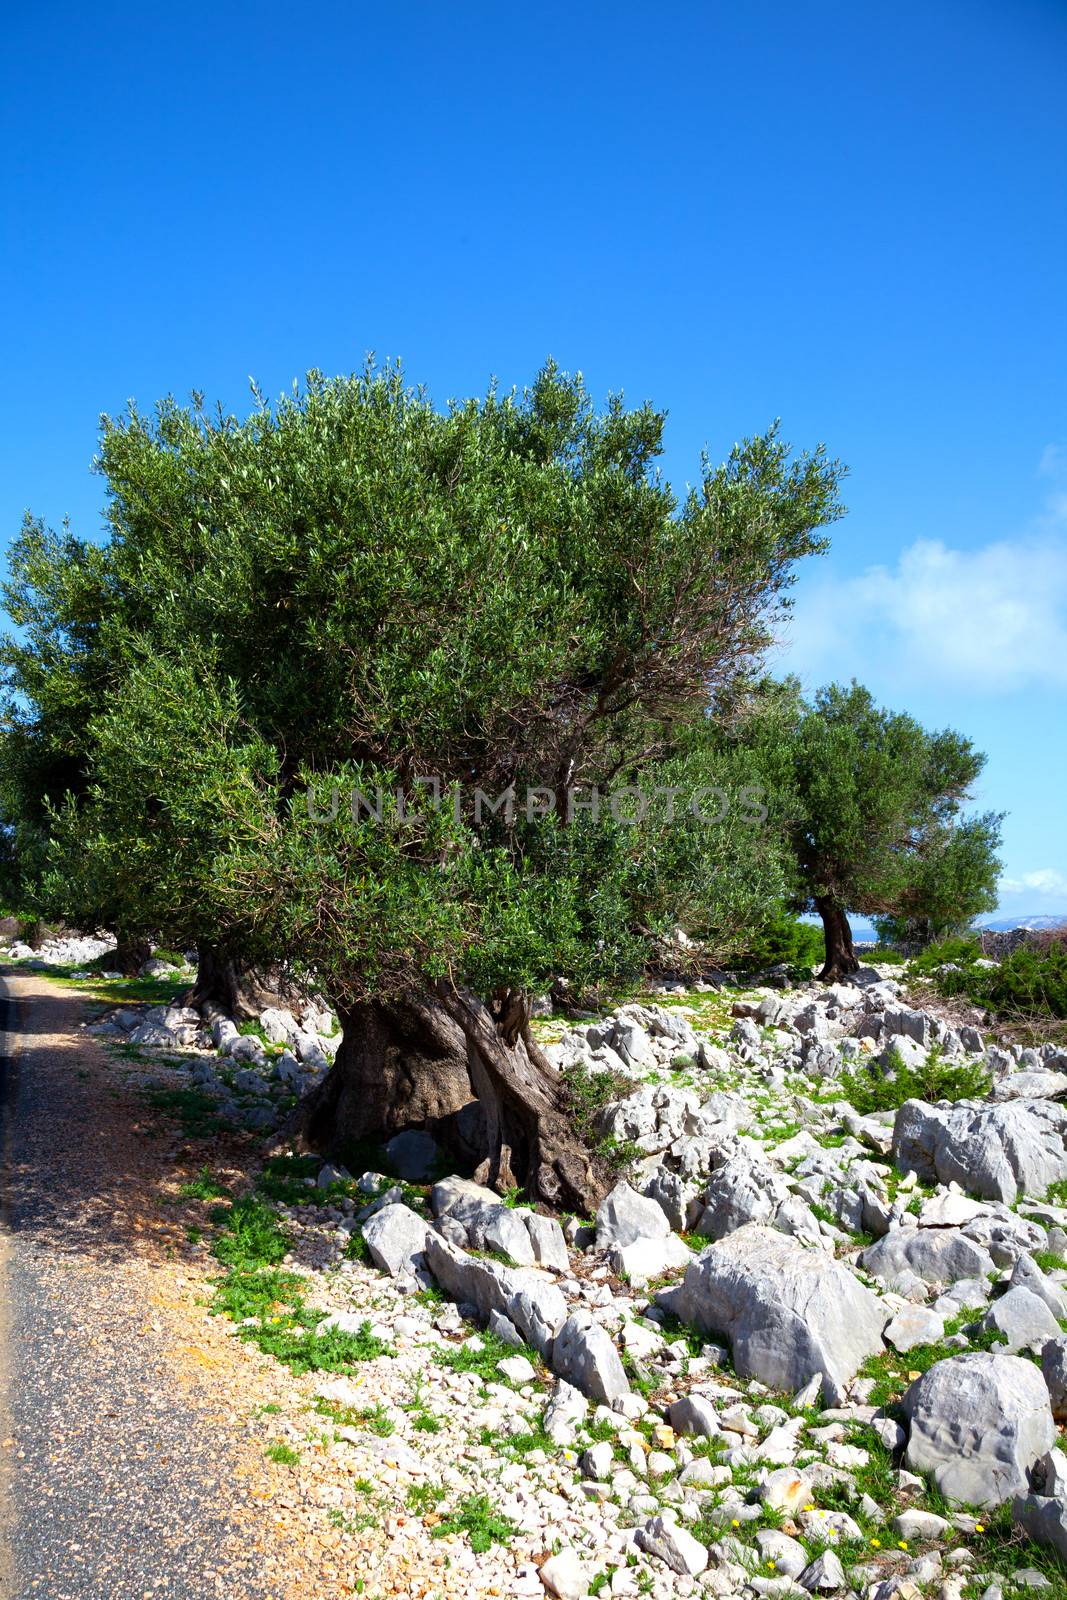 olive trees in dalmatia, Croatia.